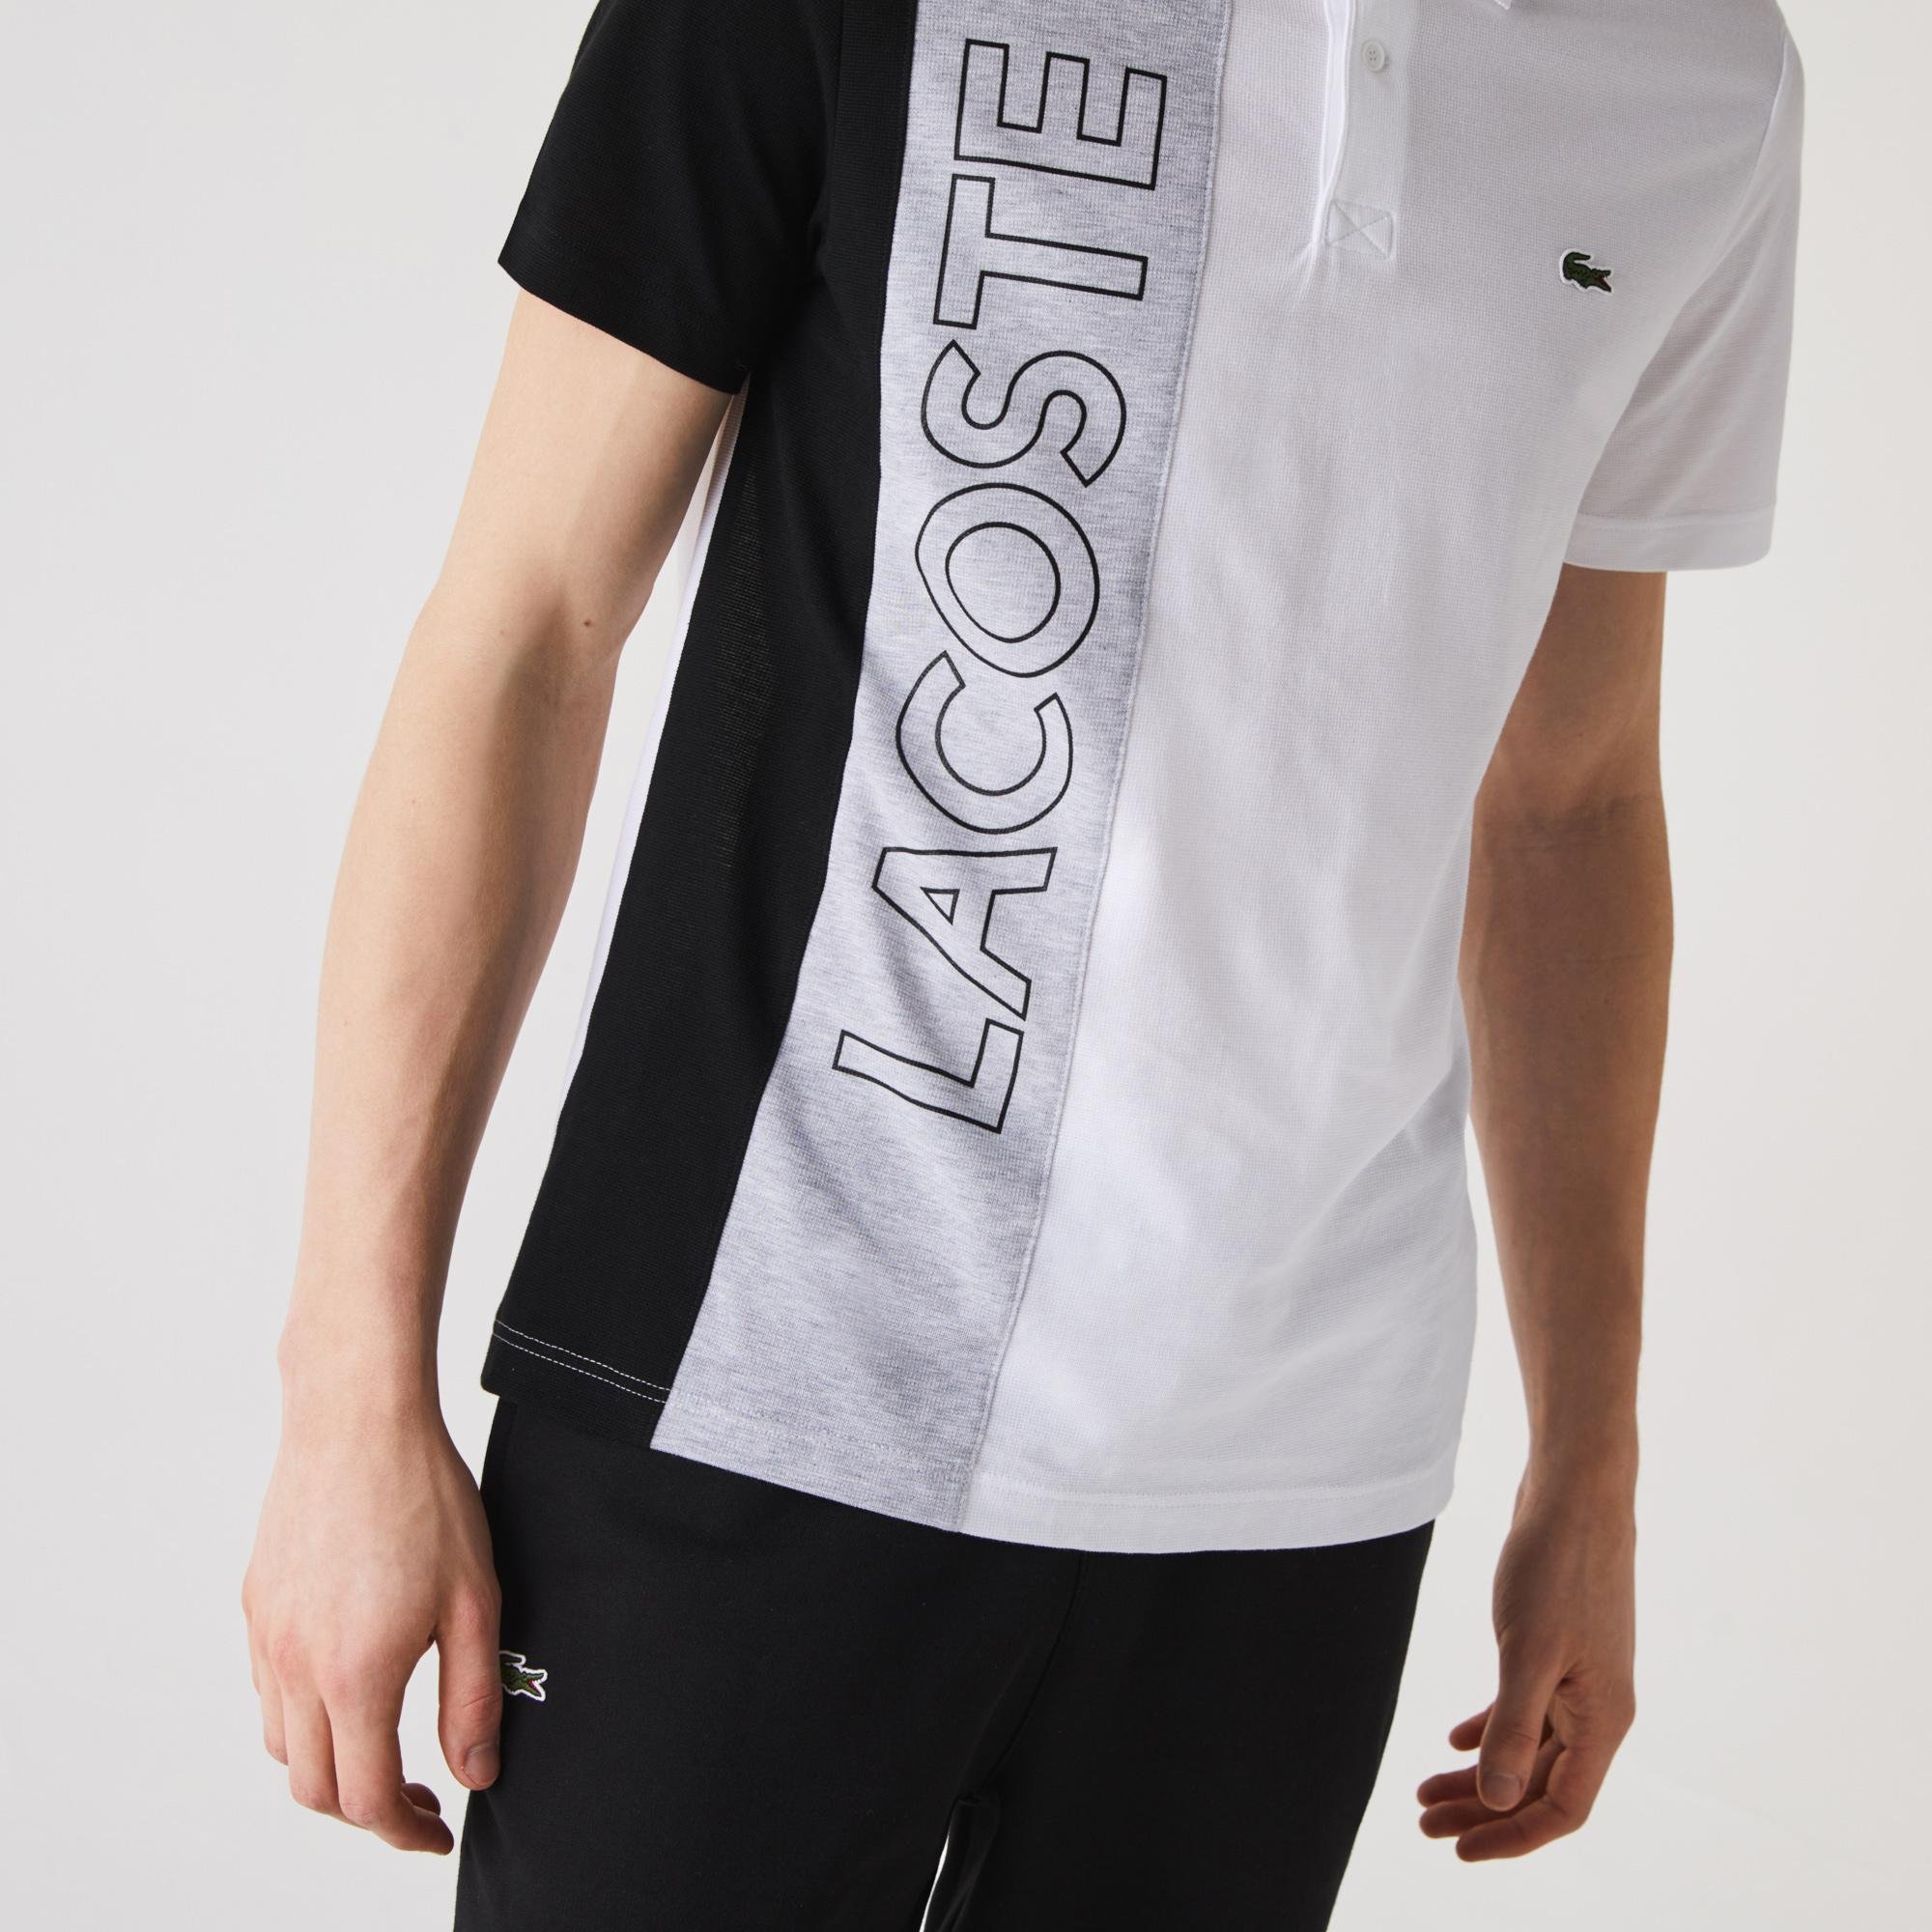 Lacoste Men’s Regular Fit Colourblock Ultra-Lightweight Knit Polo Shirt